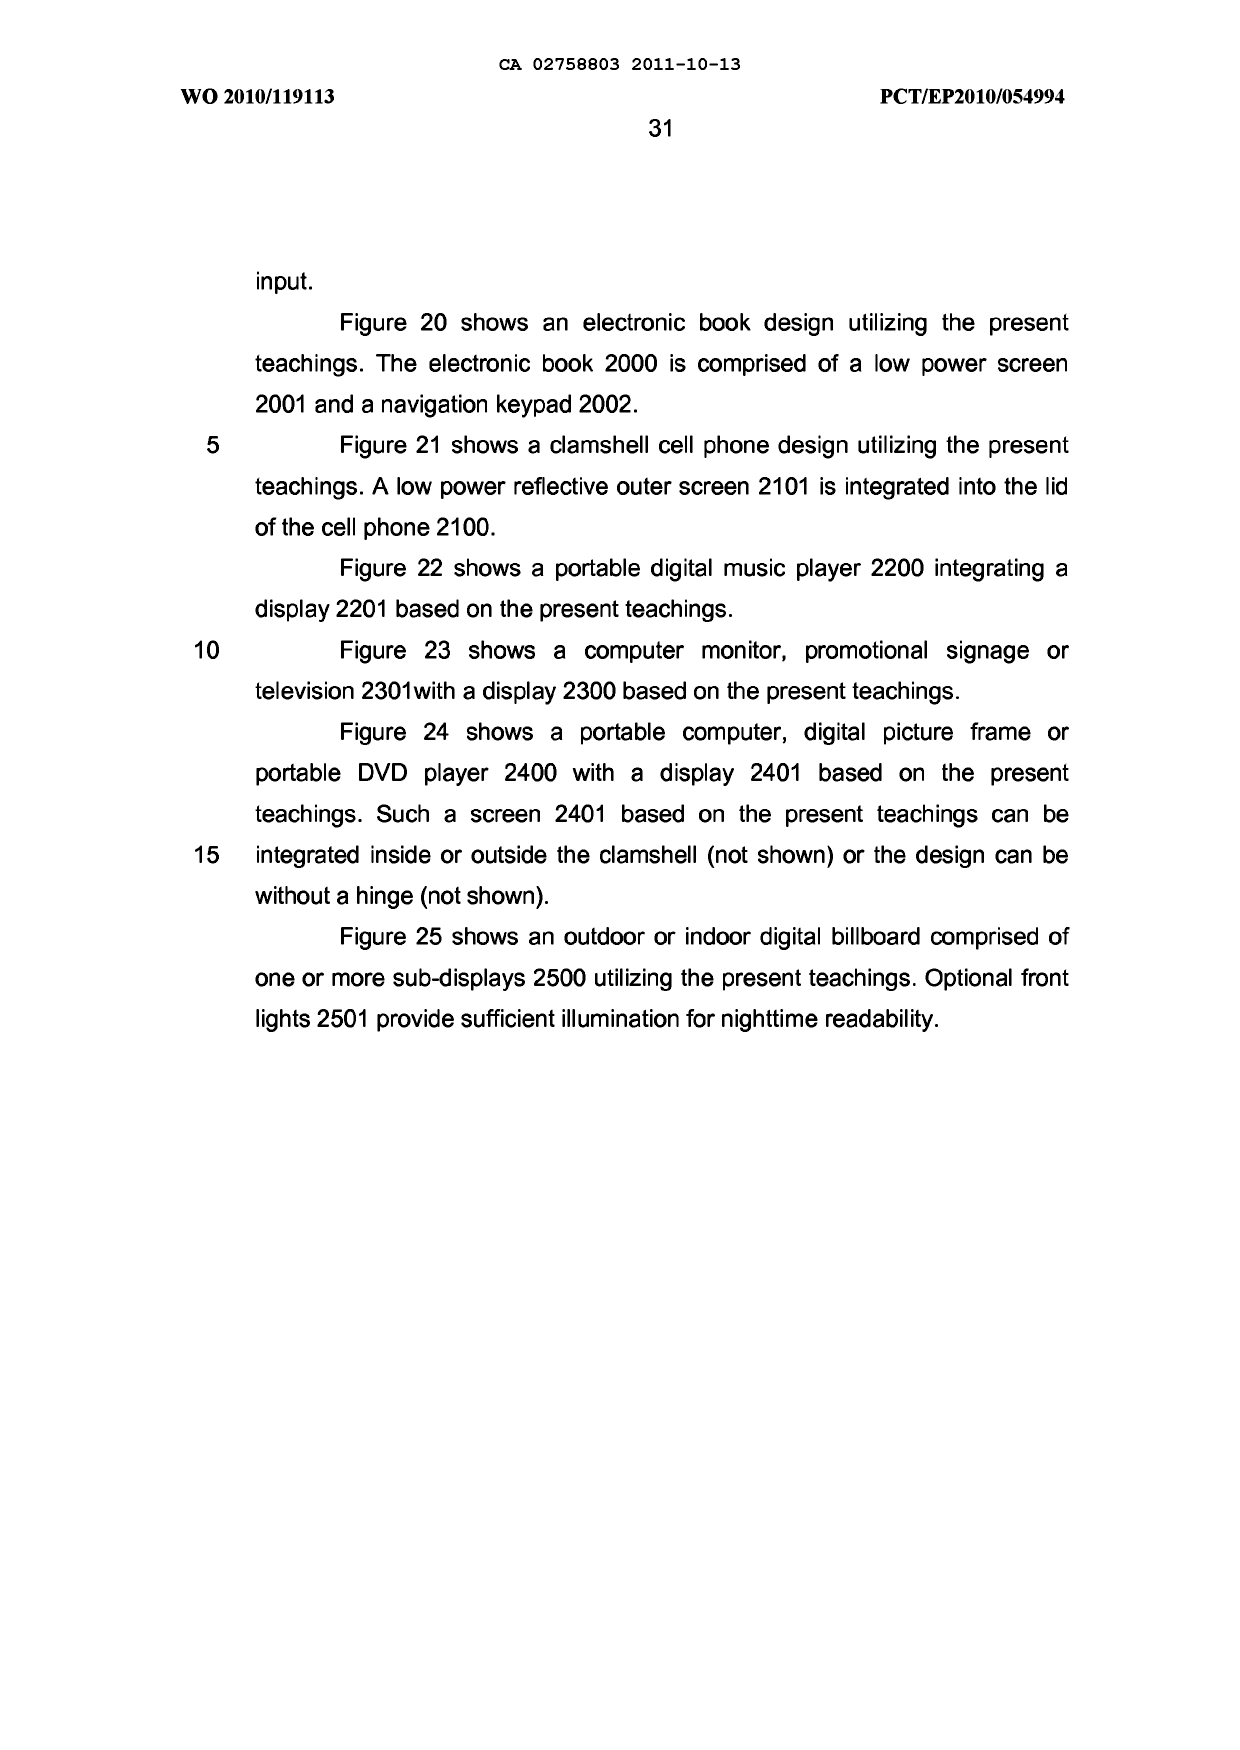 Canadian Patent Document 2758803. Description 20111013. Image 31 of 31